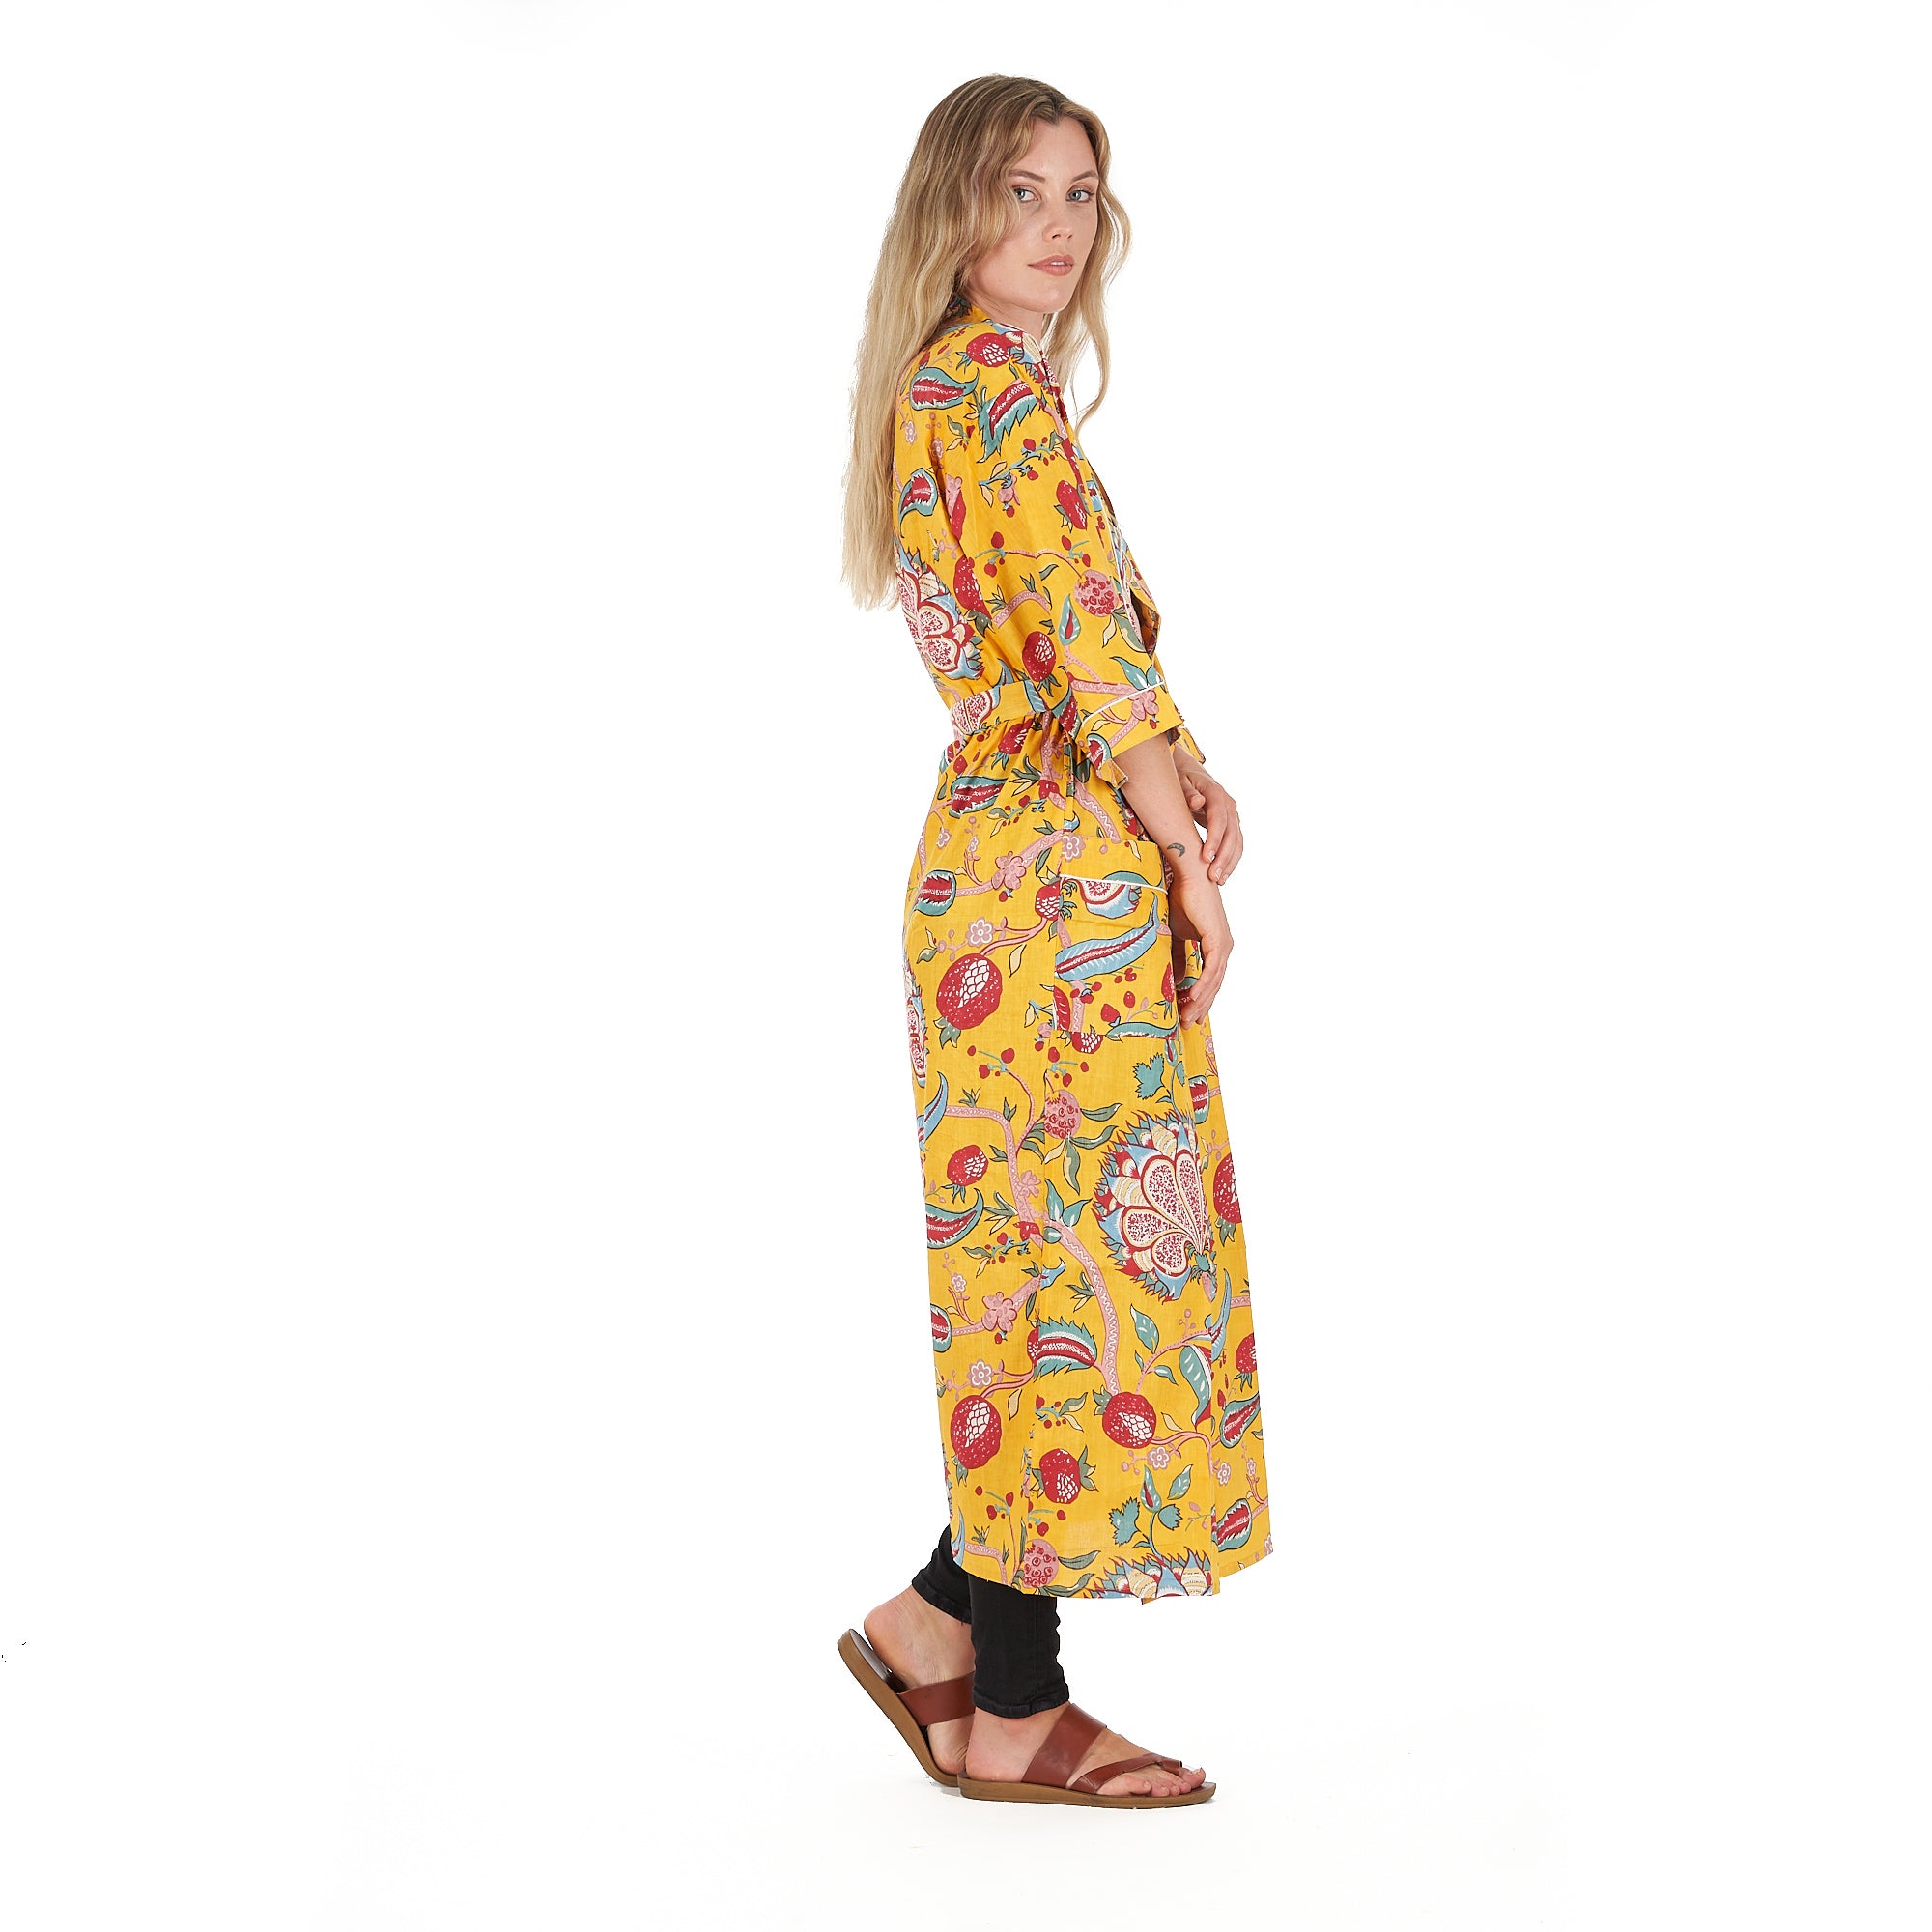 'Frida's Vibrant Forest' 100% Cotton Kimono Robe